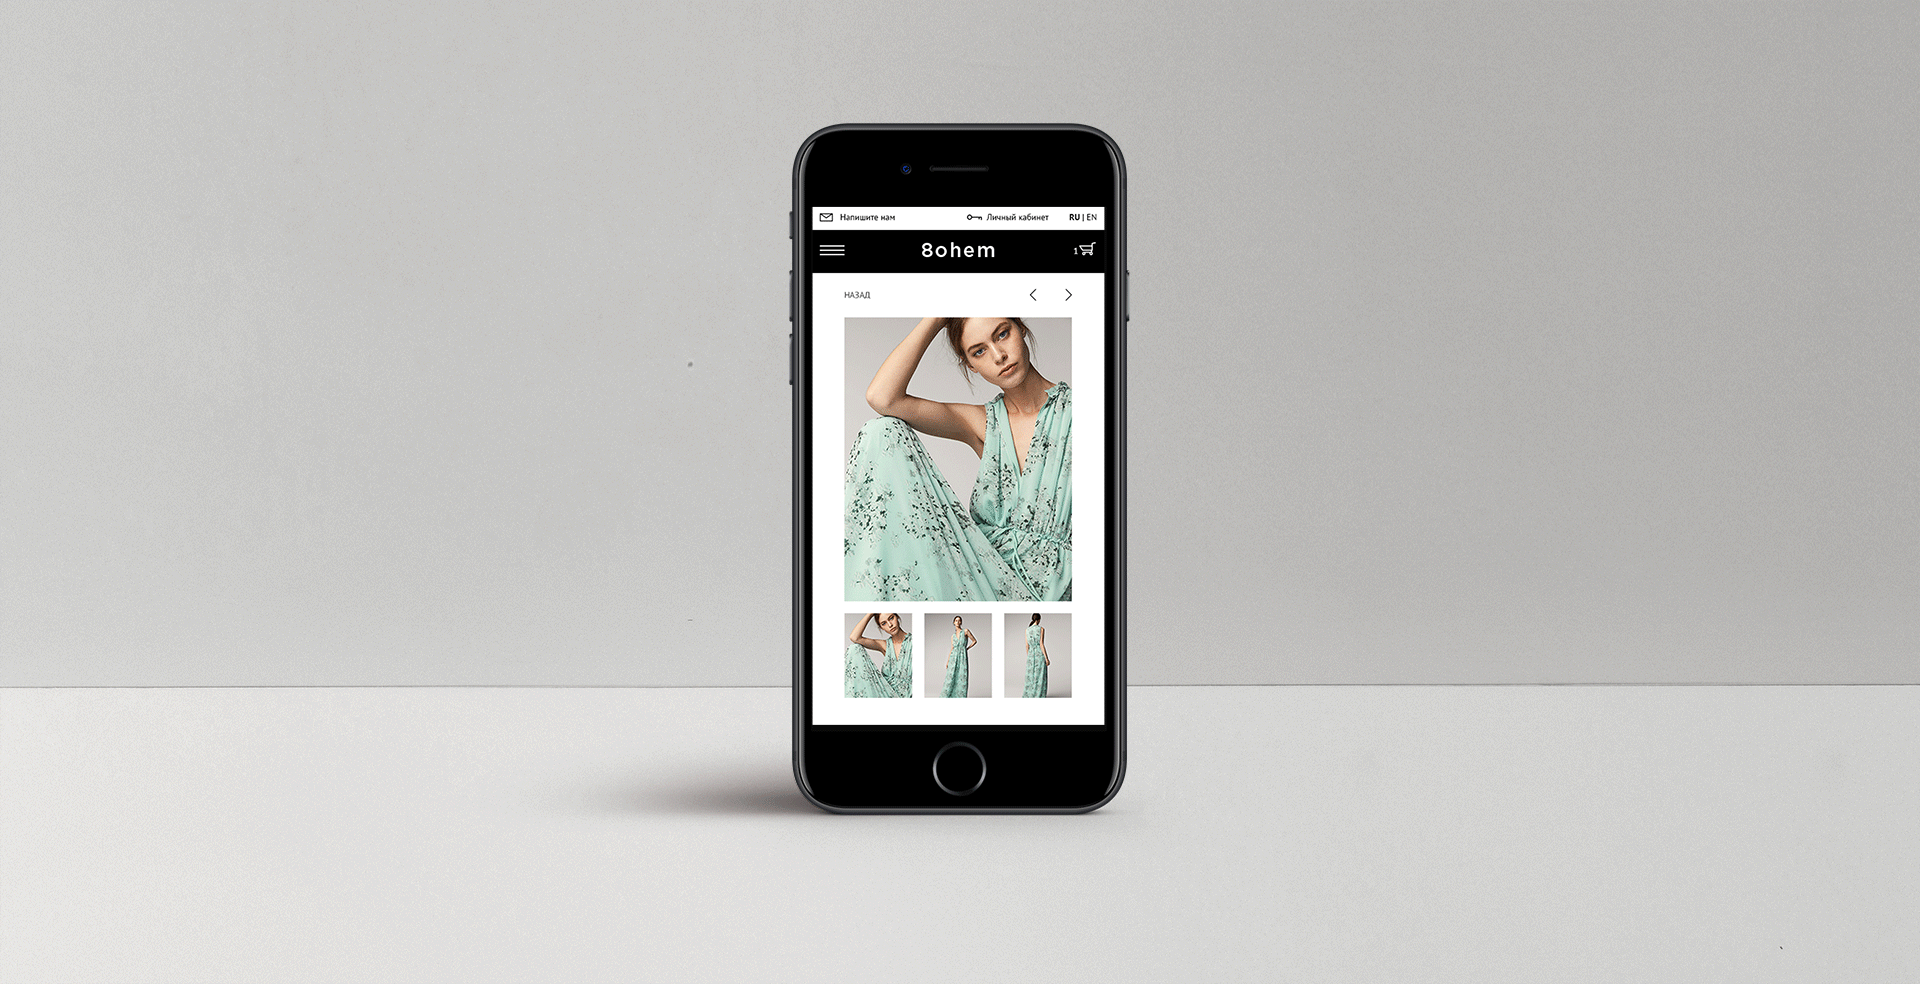 Создание сайта для интернет-магазина одежды 8ohem